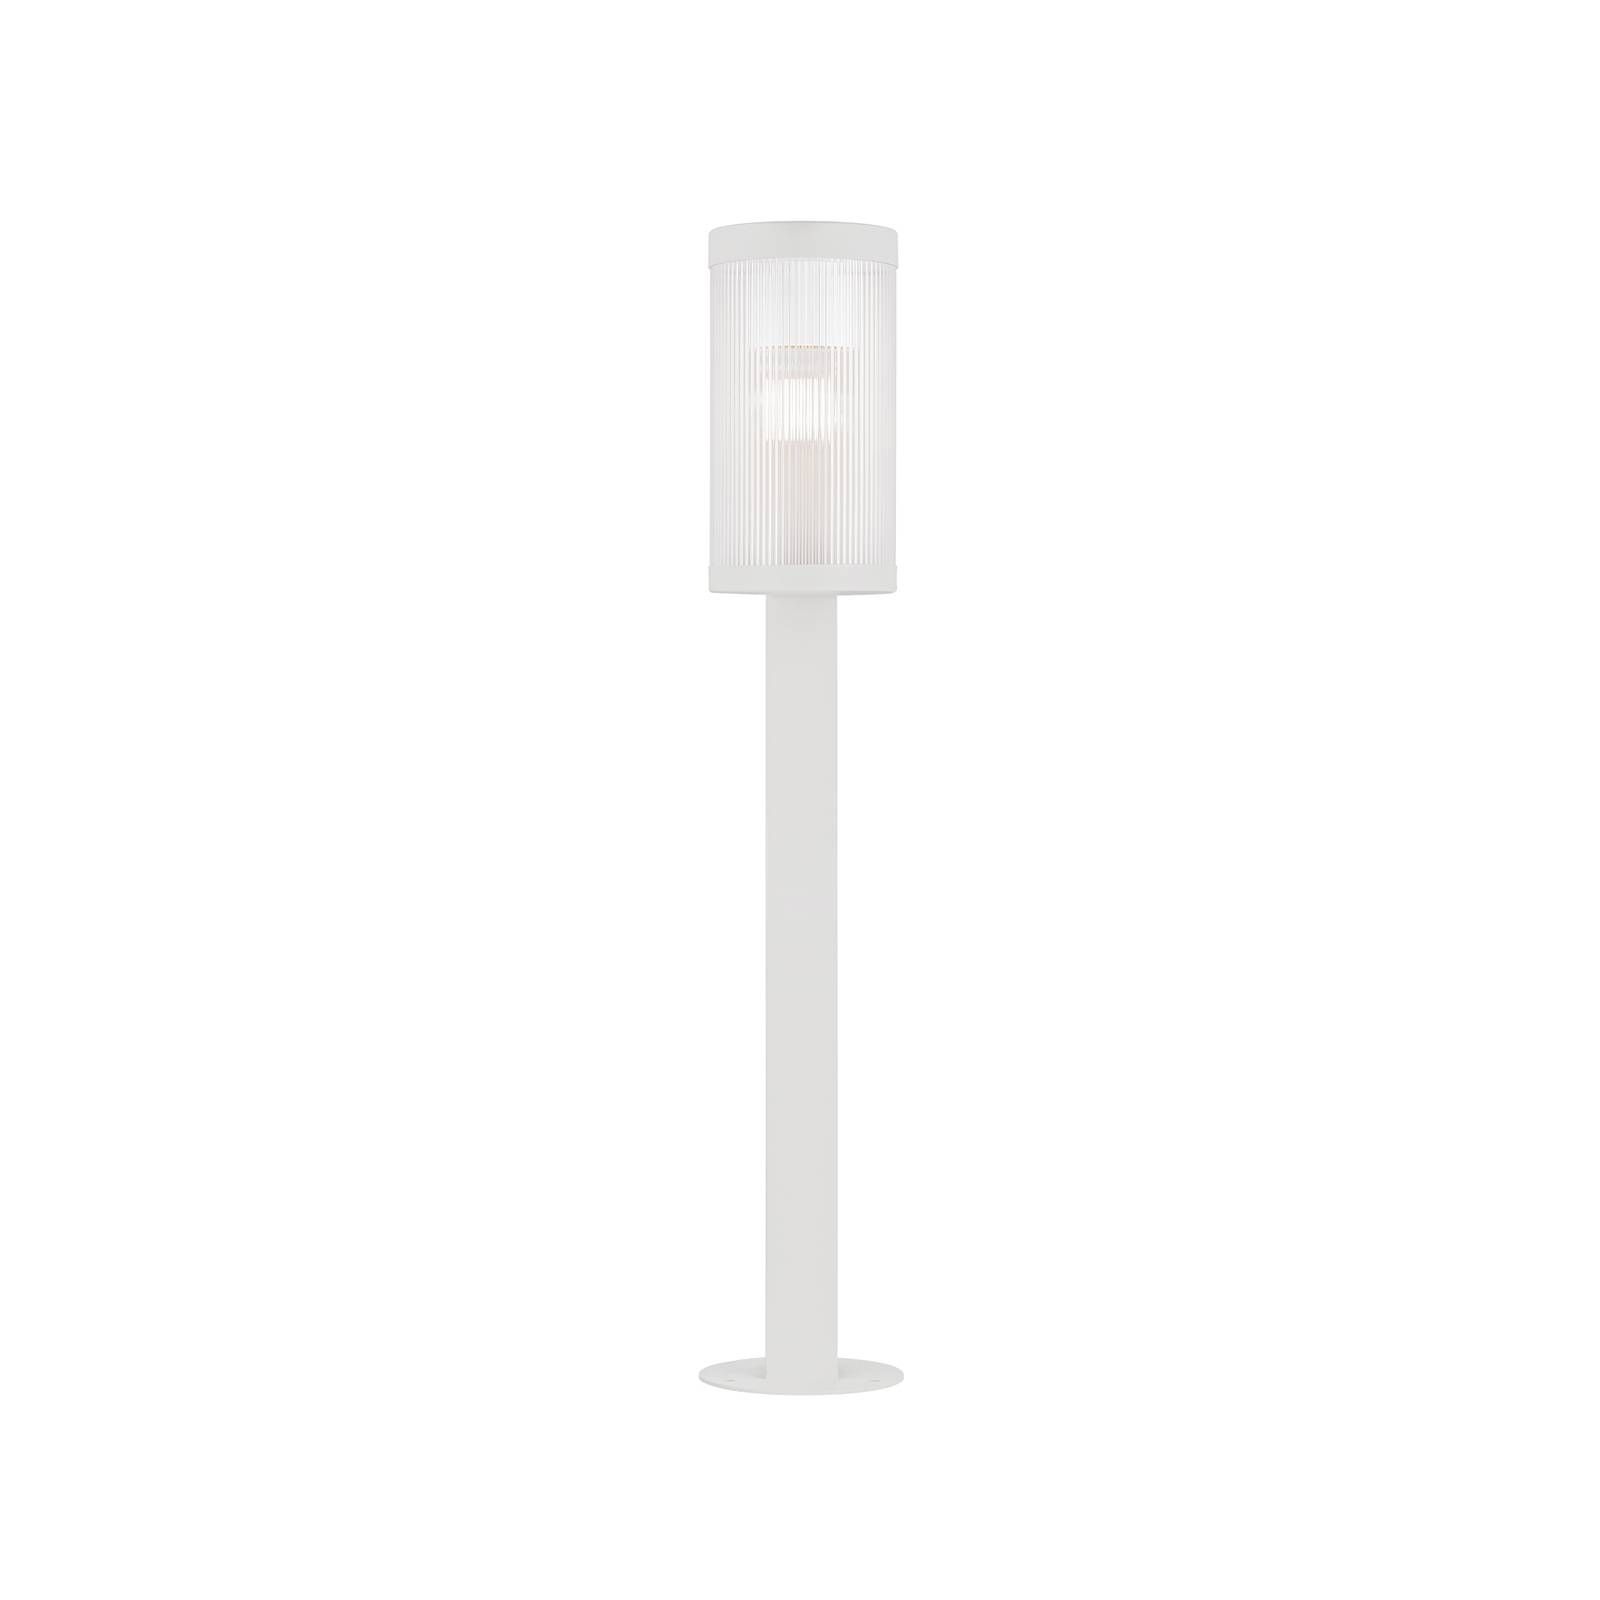 Nordlux Chodníkové svietidlo Coupar Garden z hliníka biela, hliník, plast, E27, 25W, P: 14.5 cm, L: 13 cm, K: 80cm